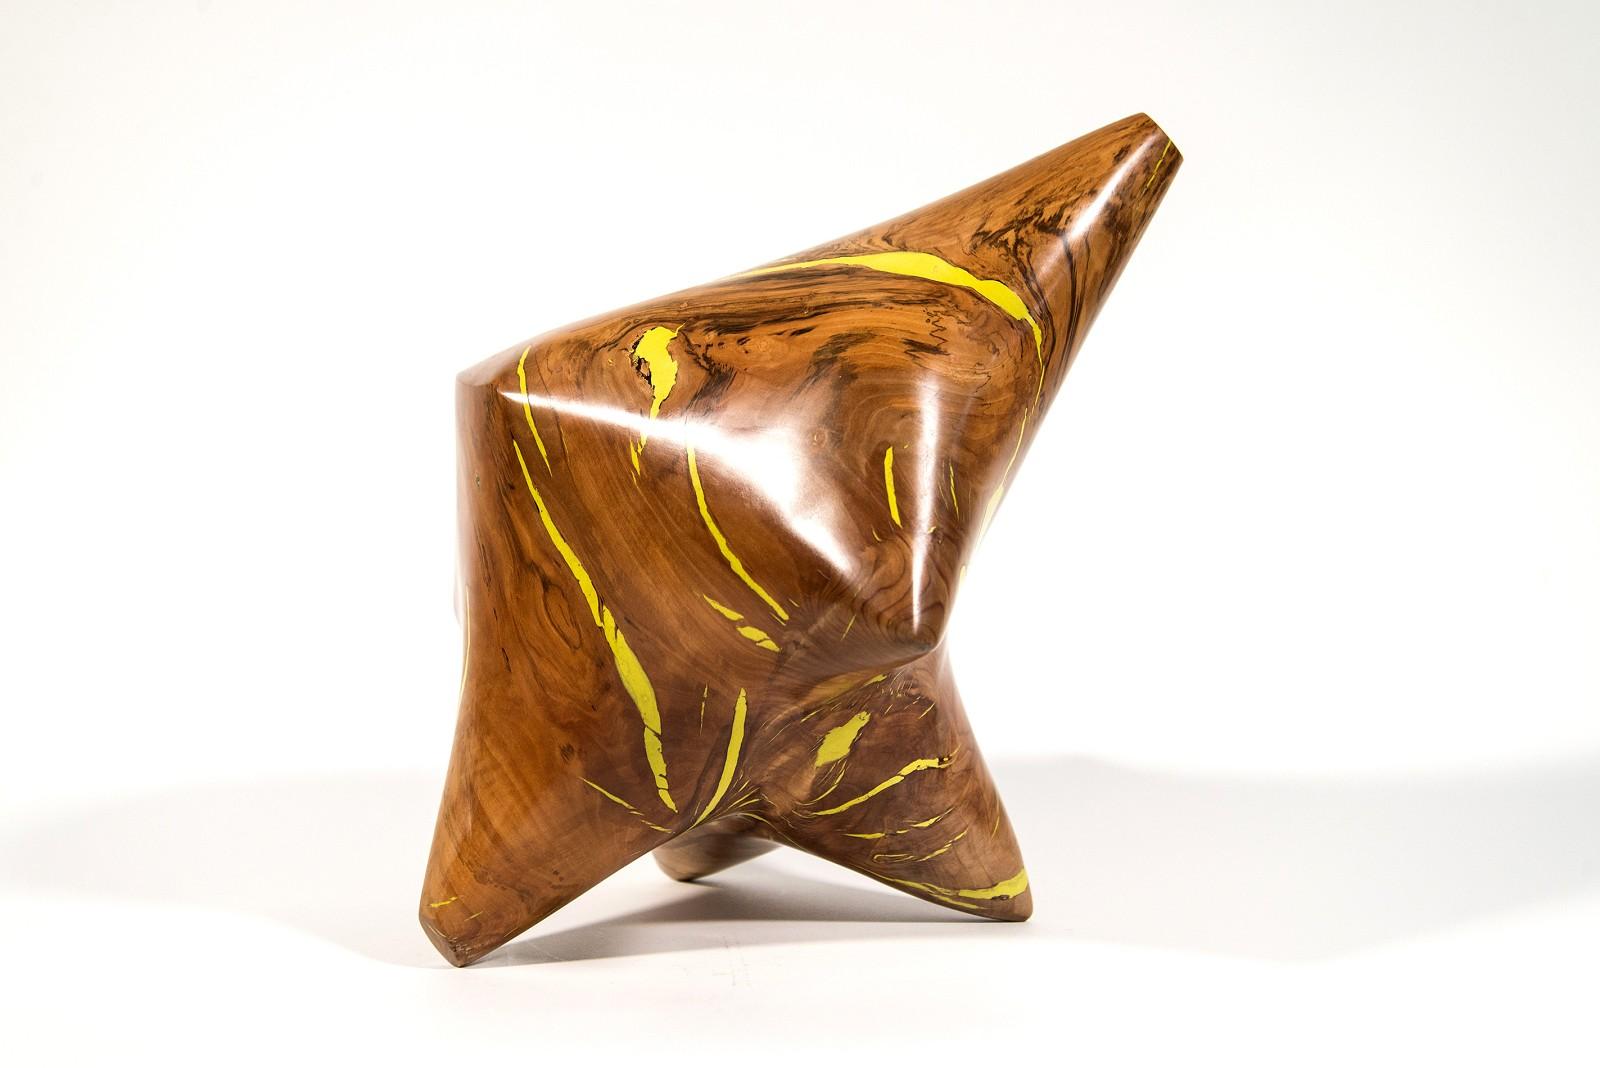 Abstract Sculpture Shayne Dark - Série Windfall II n° 7 - sculpture lisse, sculptée, abstraite, en bois de pomme et résine